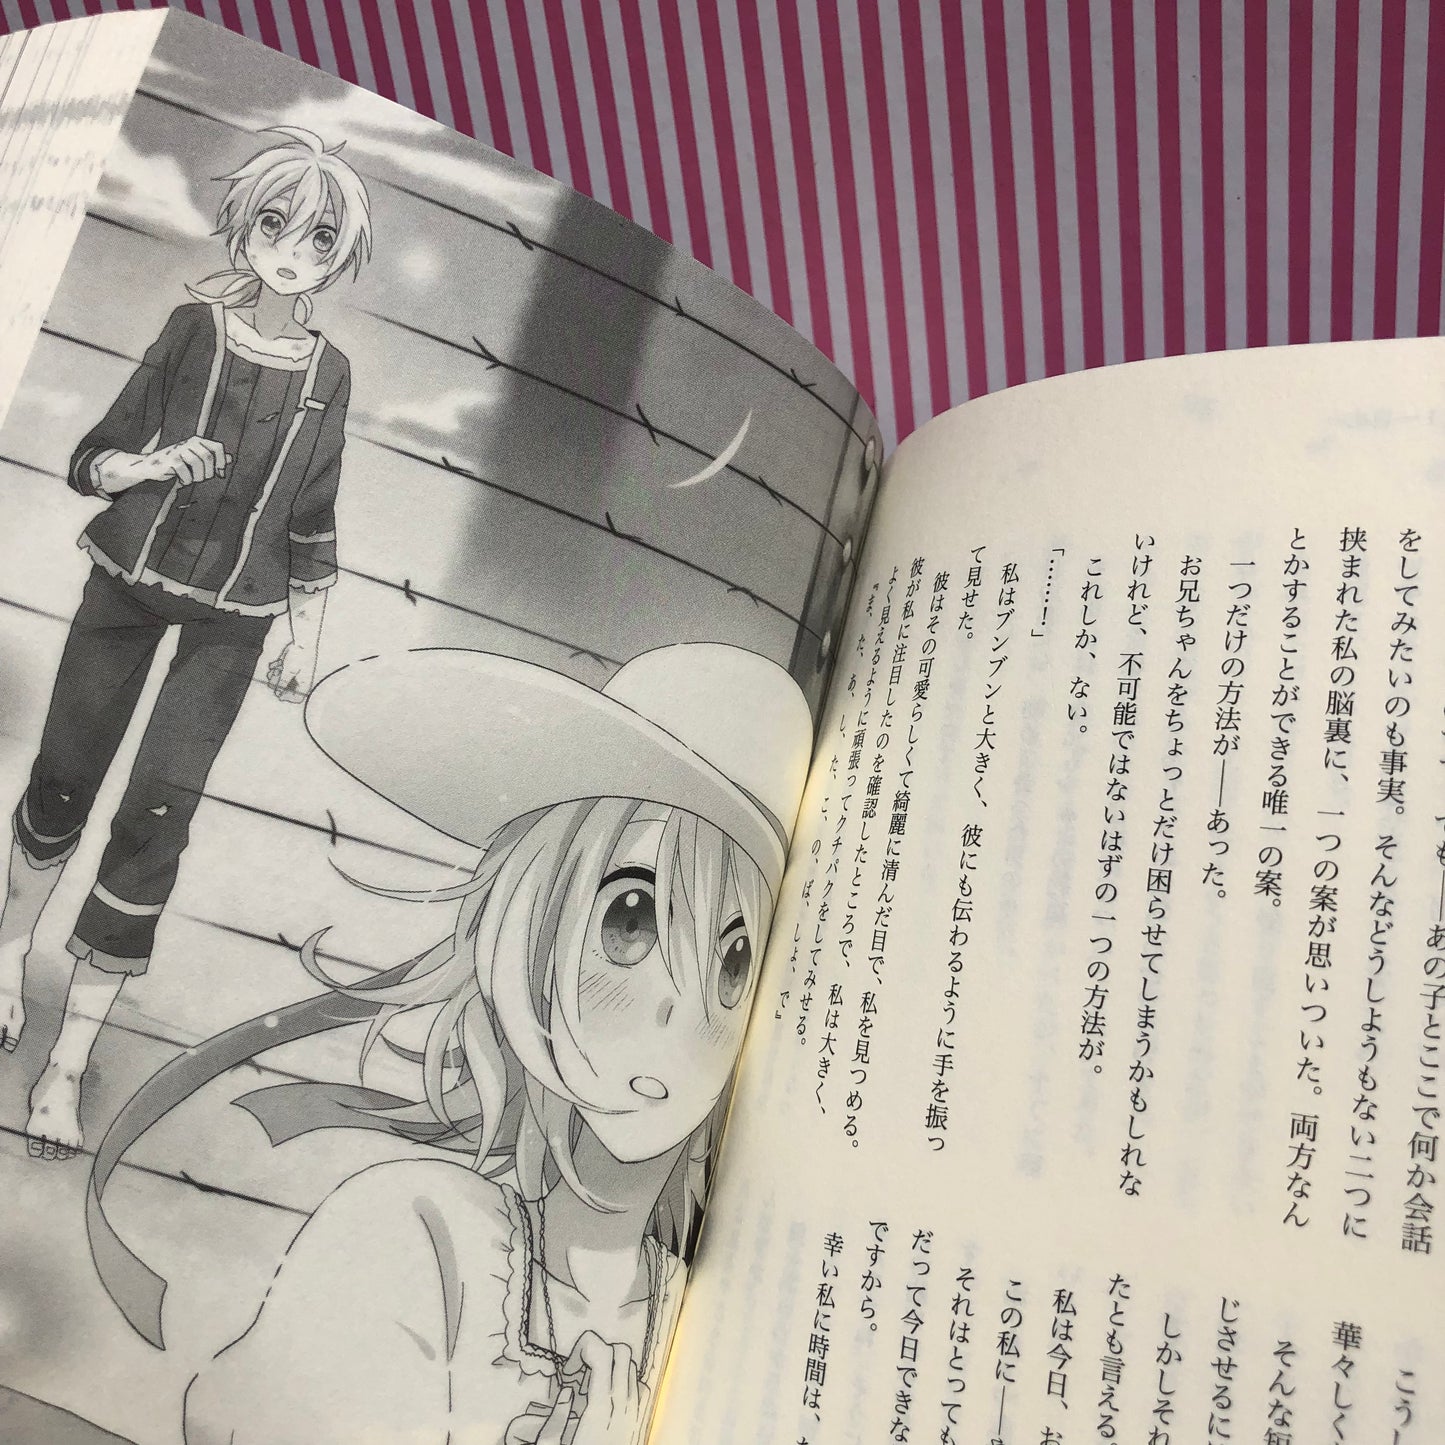 Light Novel Vocaloid Nico Nico Douga Prisoners, paper plans, girls, aporia Syujin to Kamihikouki "Shoujo Aporia" - Miku Hatsune, Syujin P